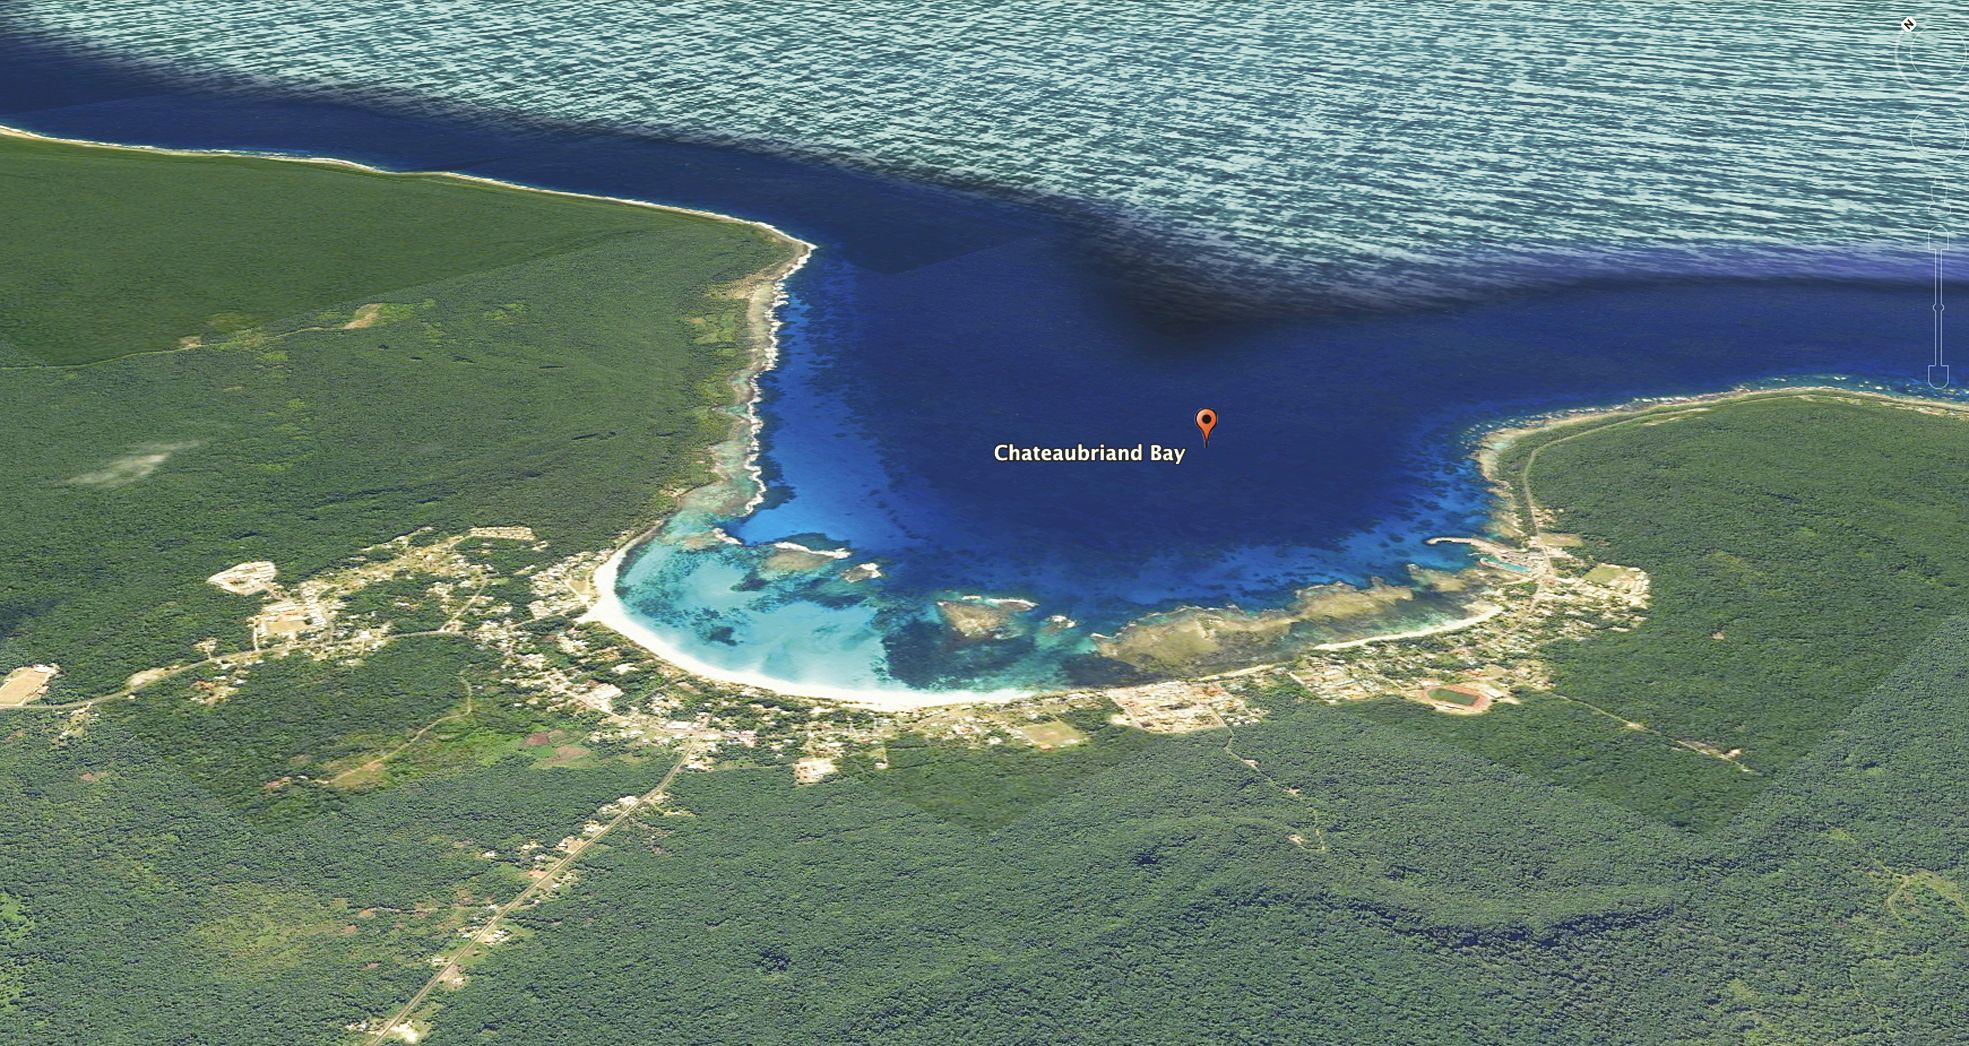 L’interdiction de baignade et de pratique des activités  nautiques concerne une bande  allant de la tribu de Luecila à celle de Xodre dans la baie de Chateaubriand à Lifou.